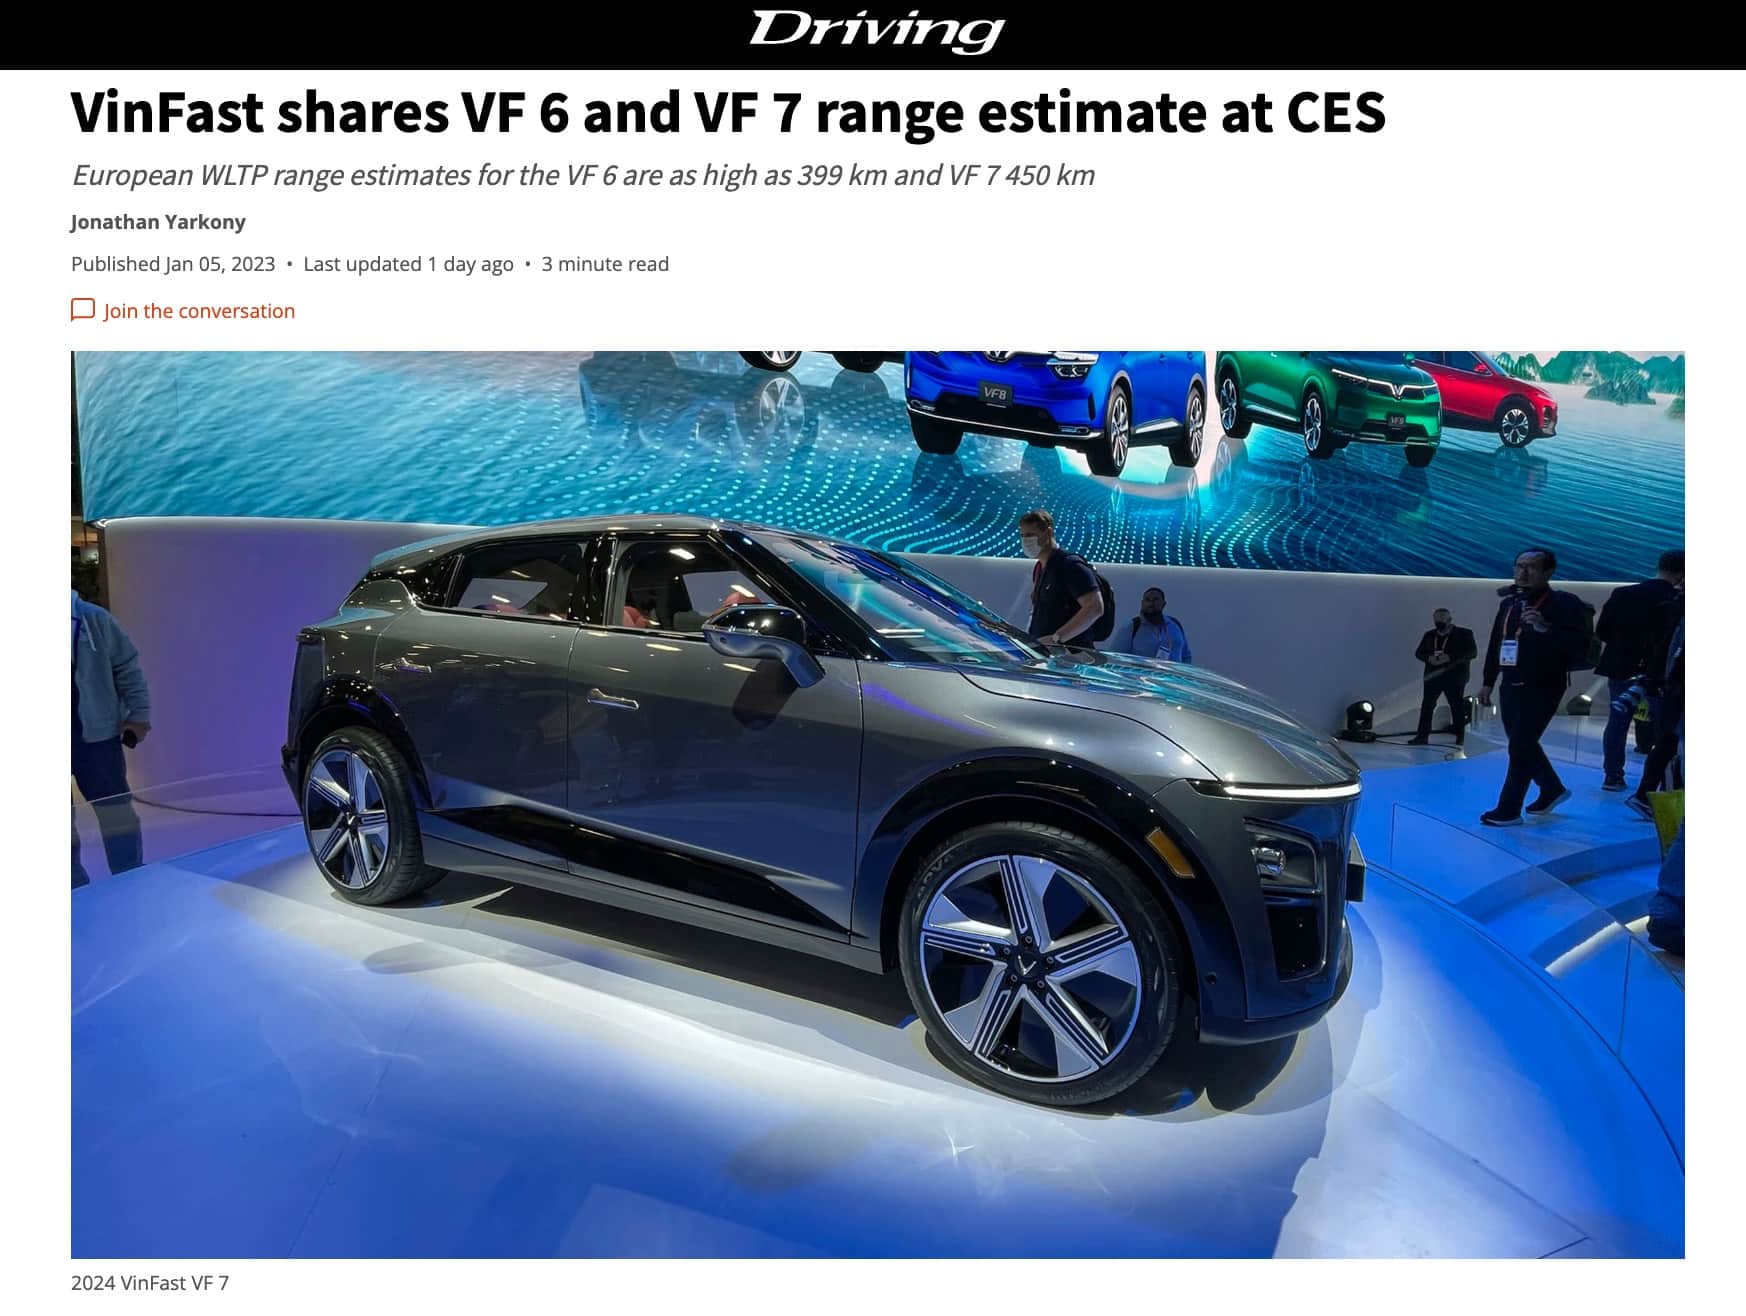 Xe điện VinFast VF 6, VF 7 nhận nhiều lời khen của truyền thông quốc tế tại CES 2023 - Ảnh 2.